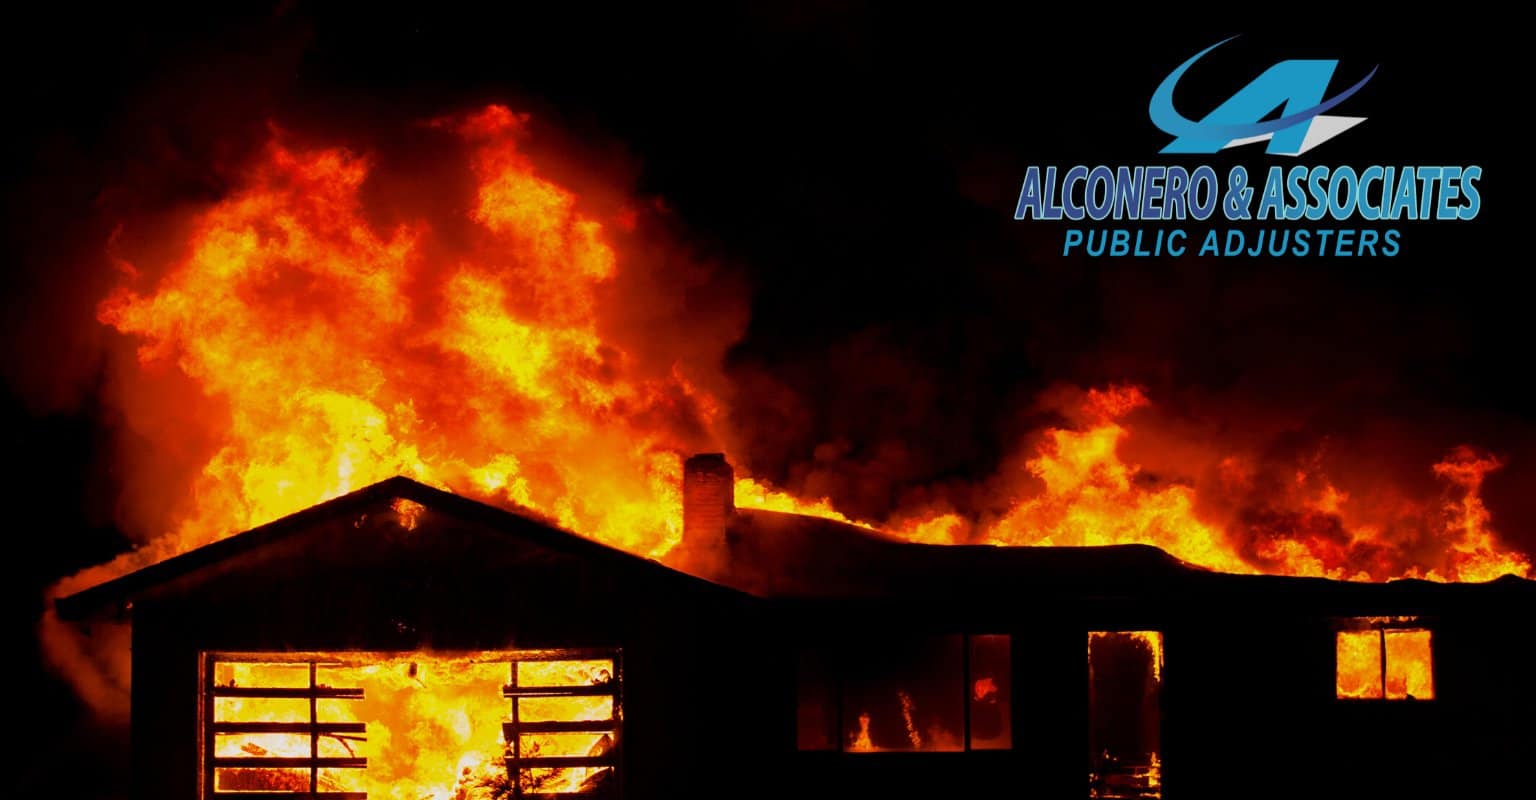 Smoke damage claim assistance with Alconero & Associates Ajustador Publicos